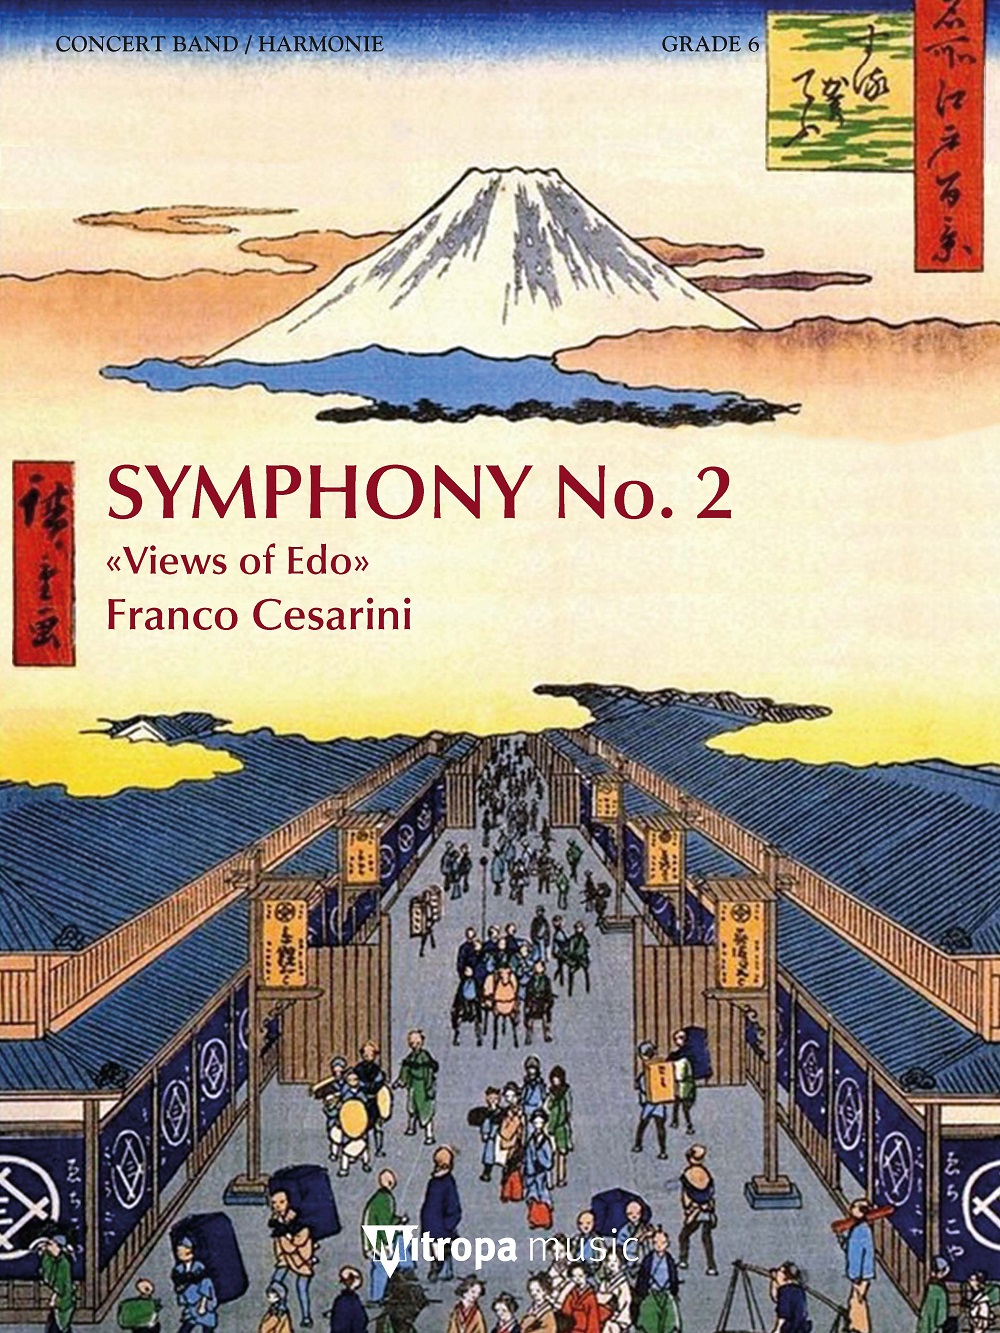 Symphony No. 2 – Views of Edo